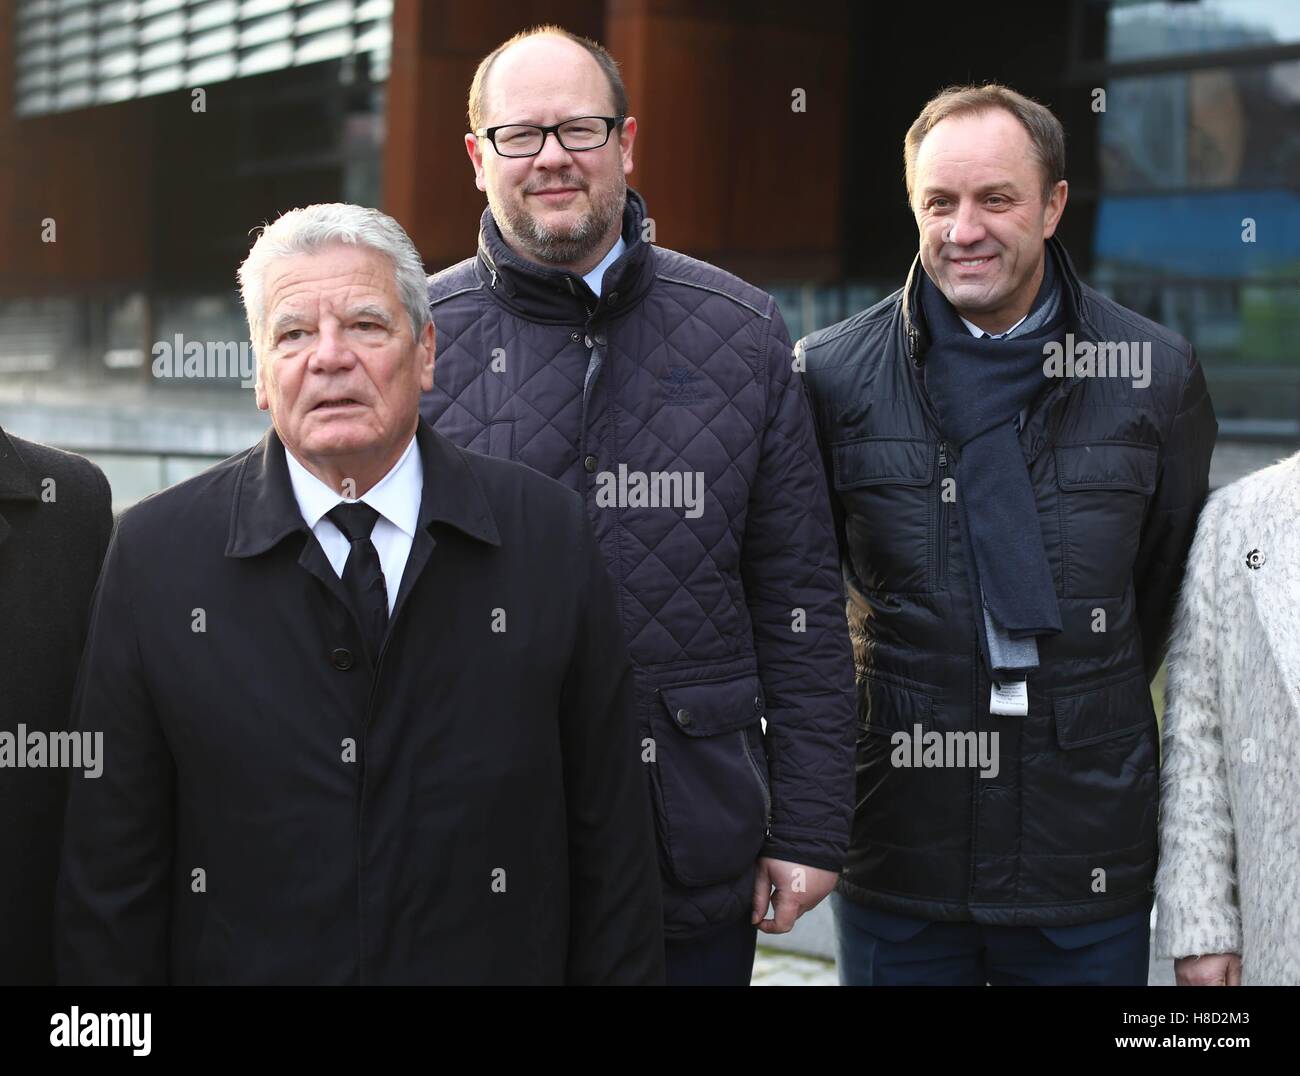 Piotr Hukalo / East News Gdansk 10 11 2016. Prezydent Niemiec Joachim Gauck z wizyta w Gdansku. n/z Joachim Gauck, Pawel Adamowi Stock Photo